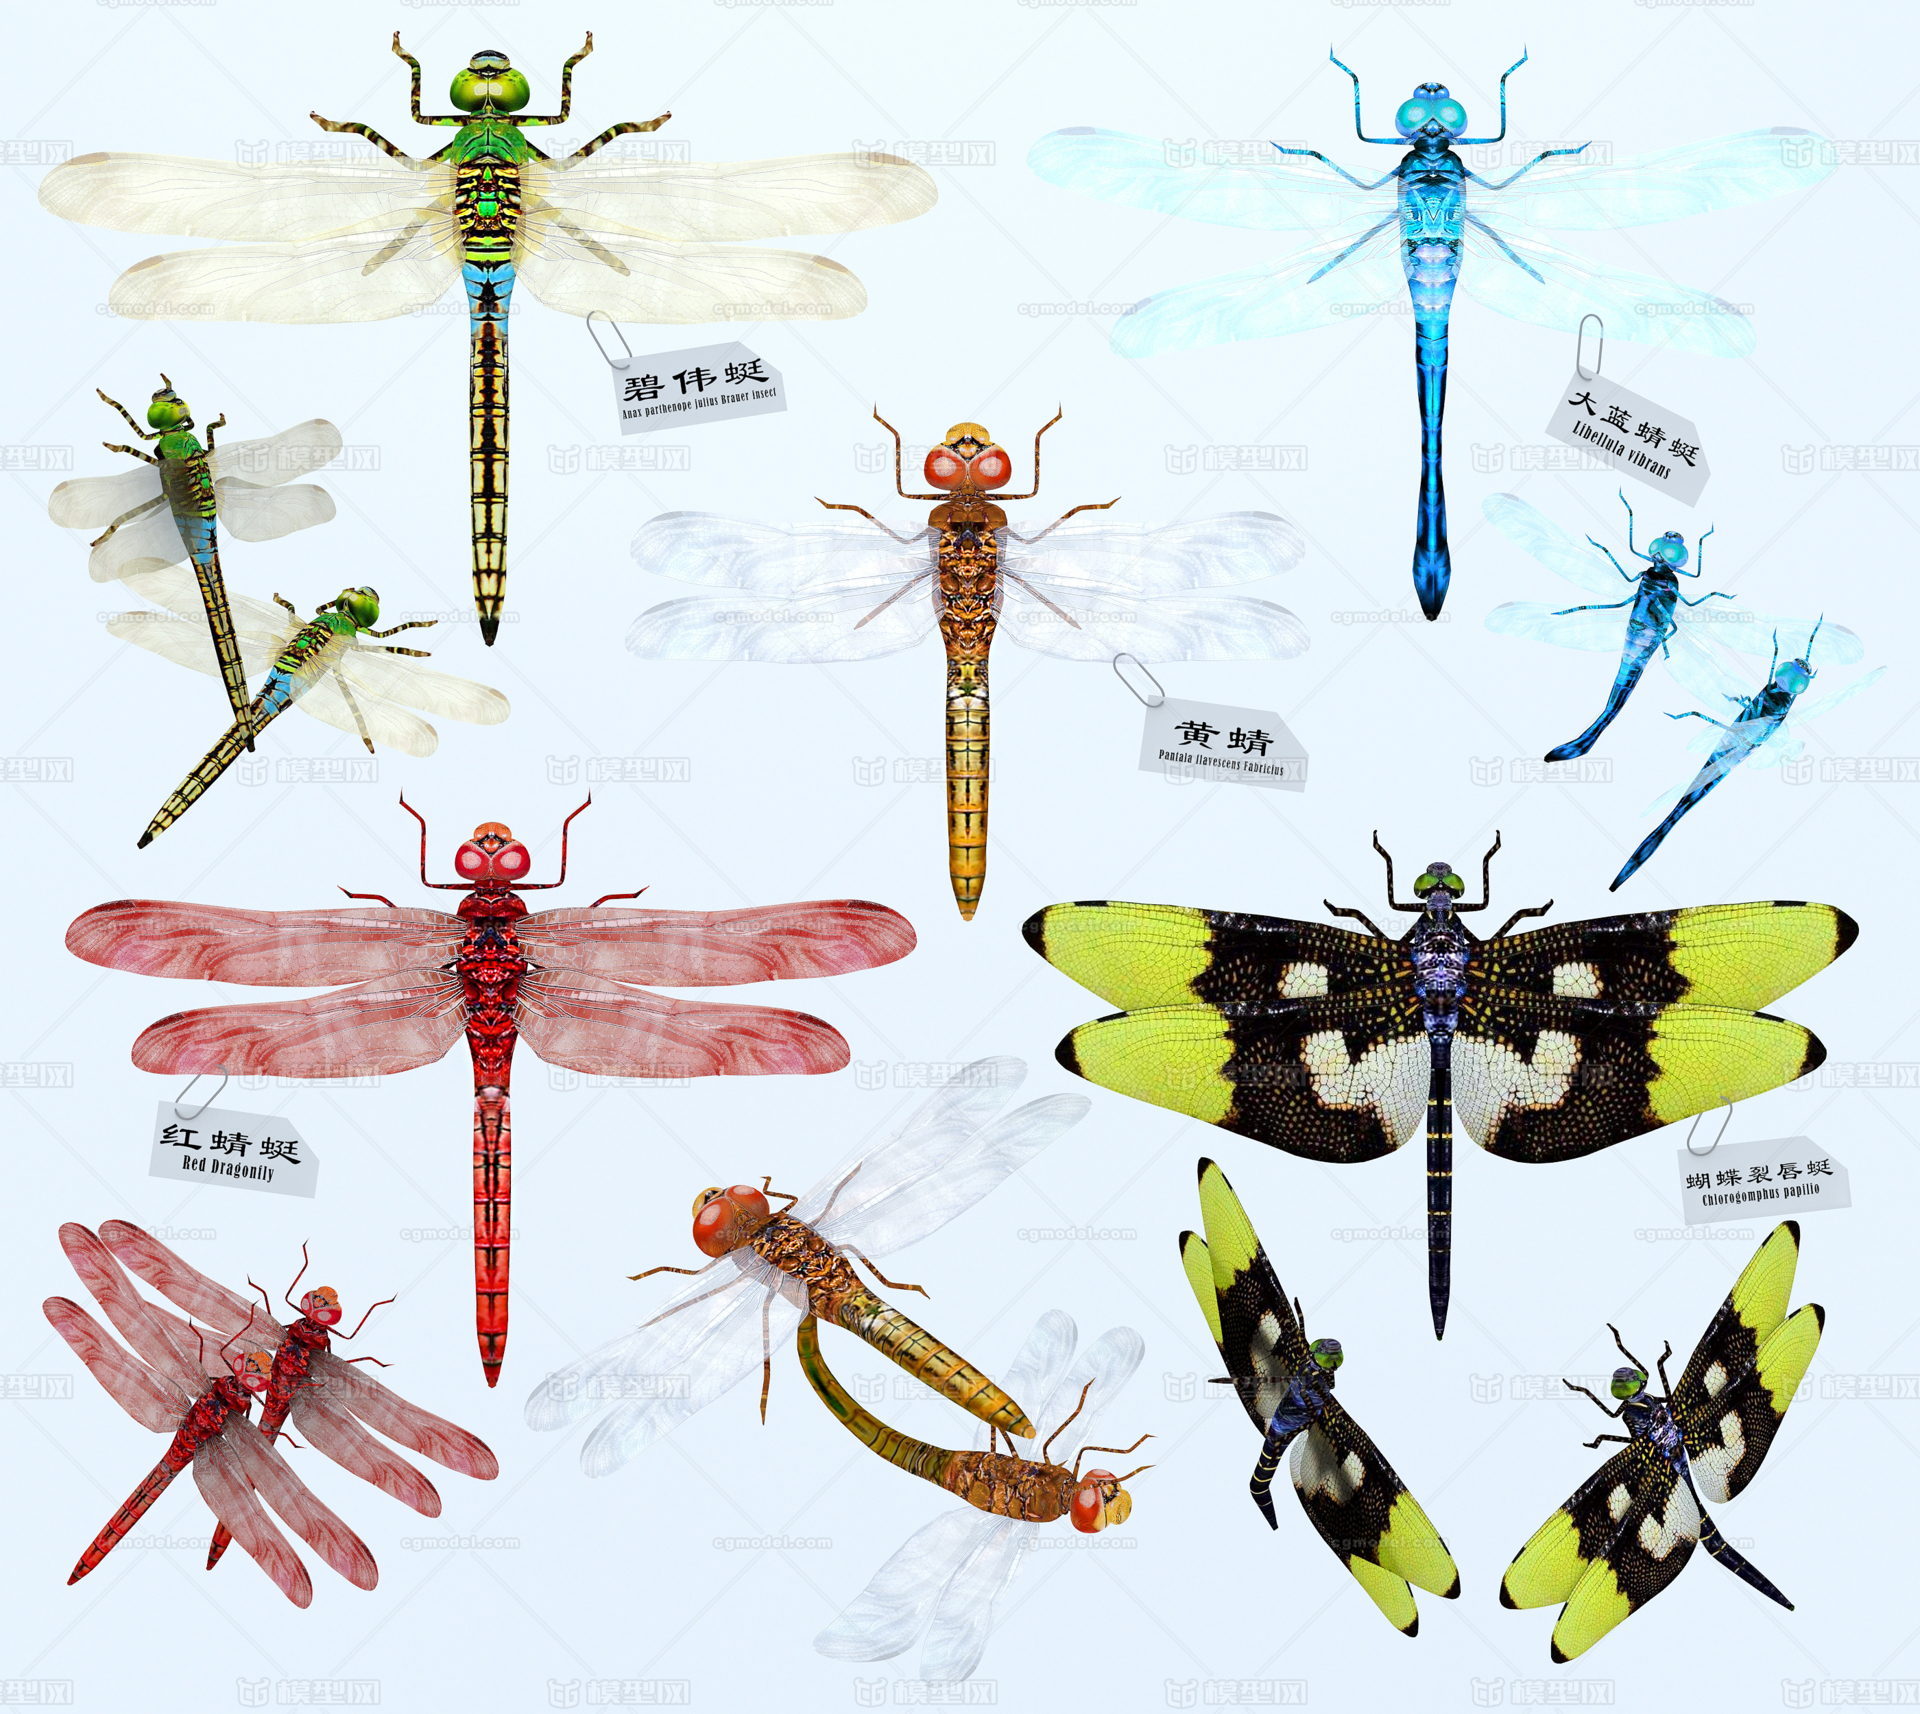 蜻蜓,昆虫属,飞虫,豆娘,组合系列, 标本,摆件,藏品,教学用素材,动物界